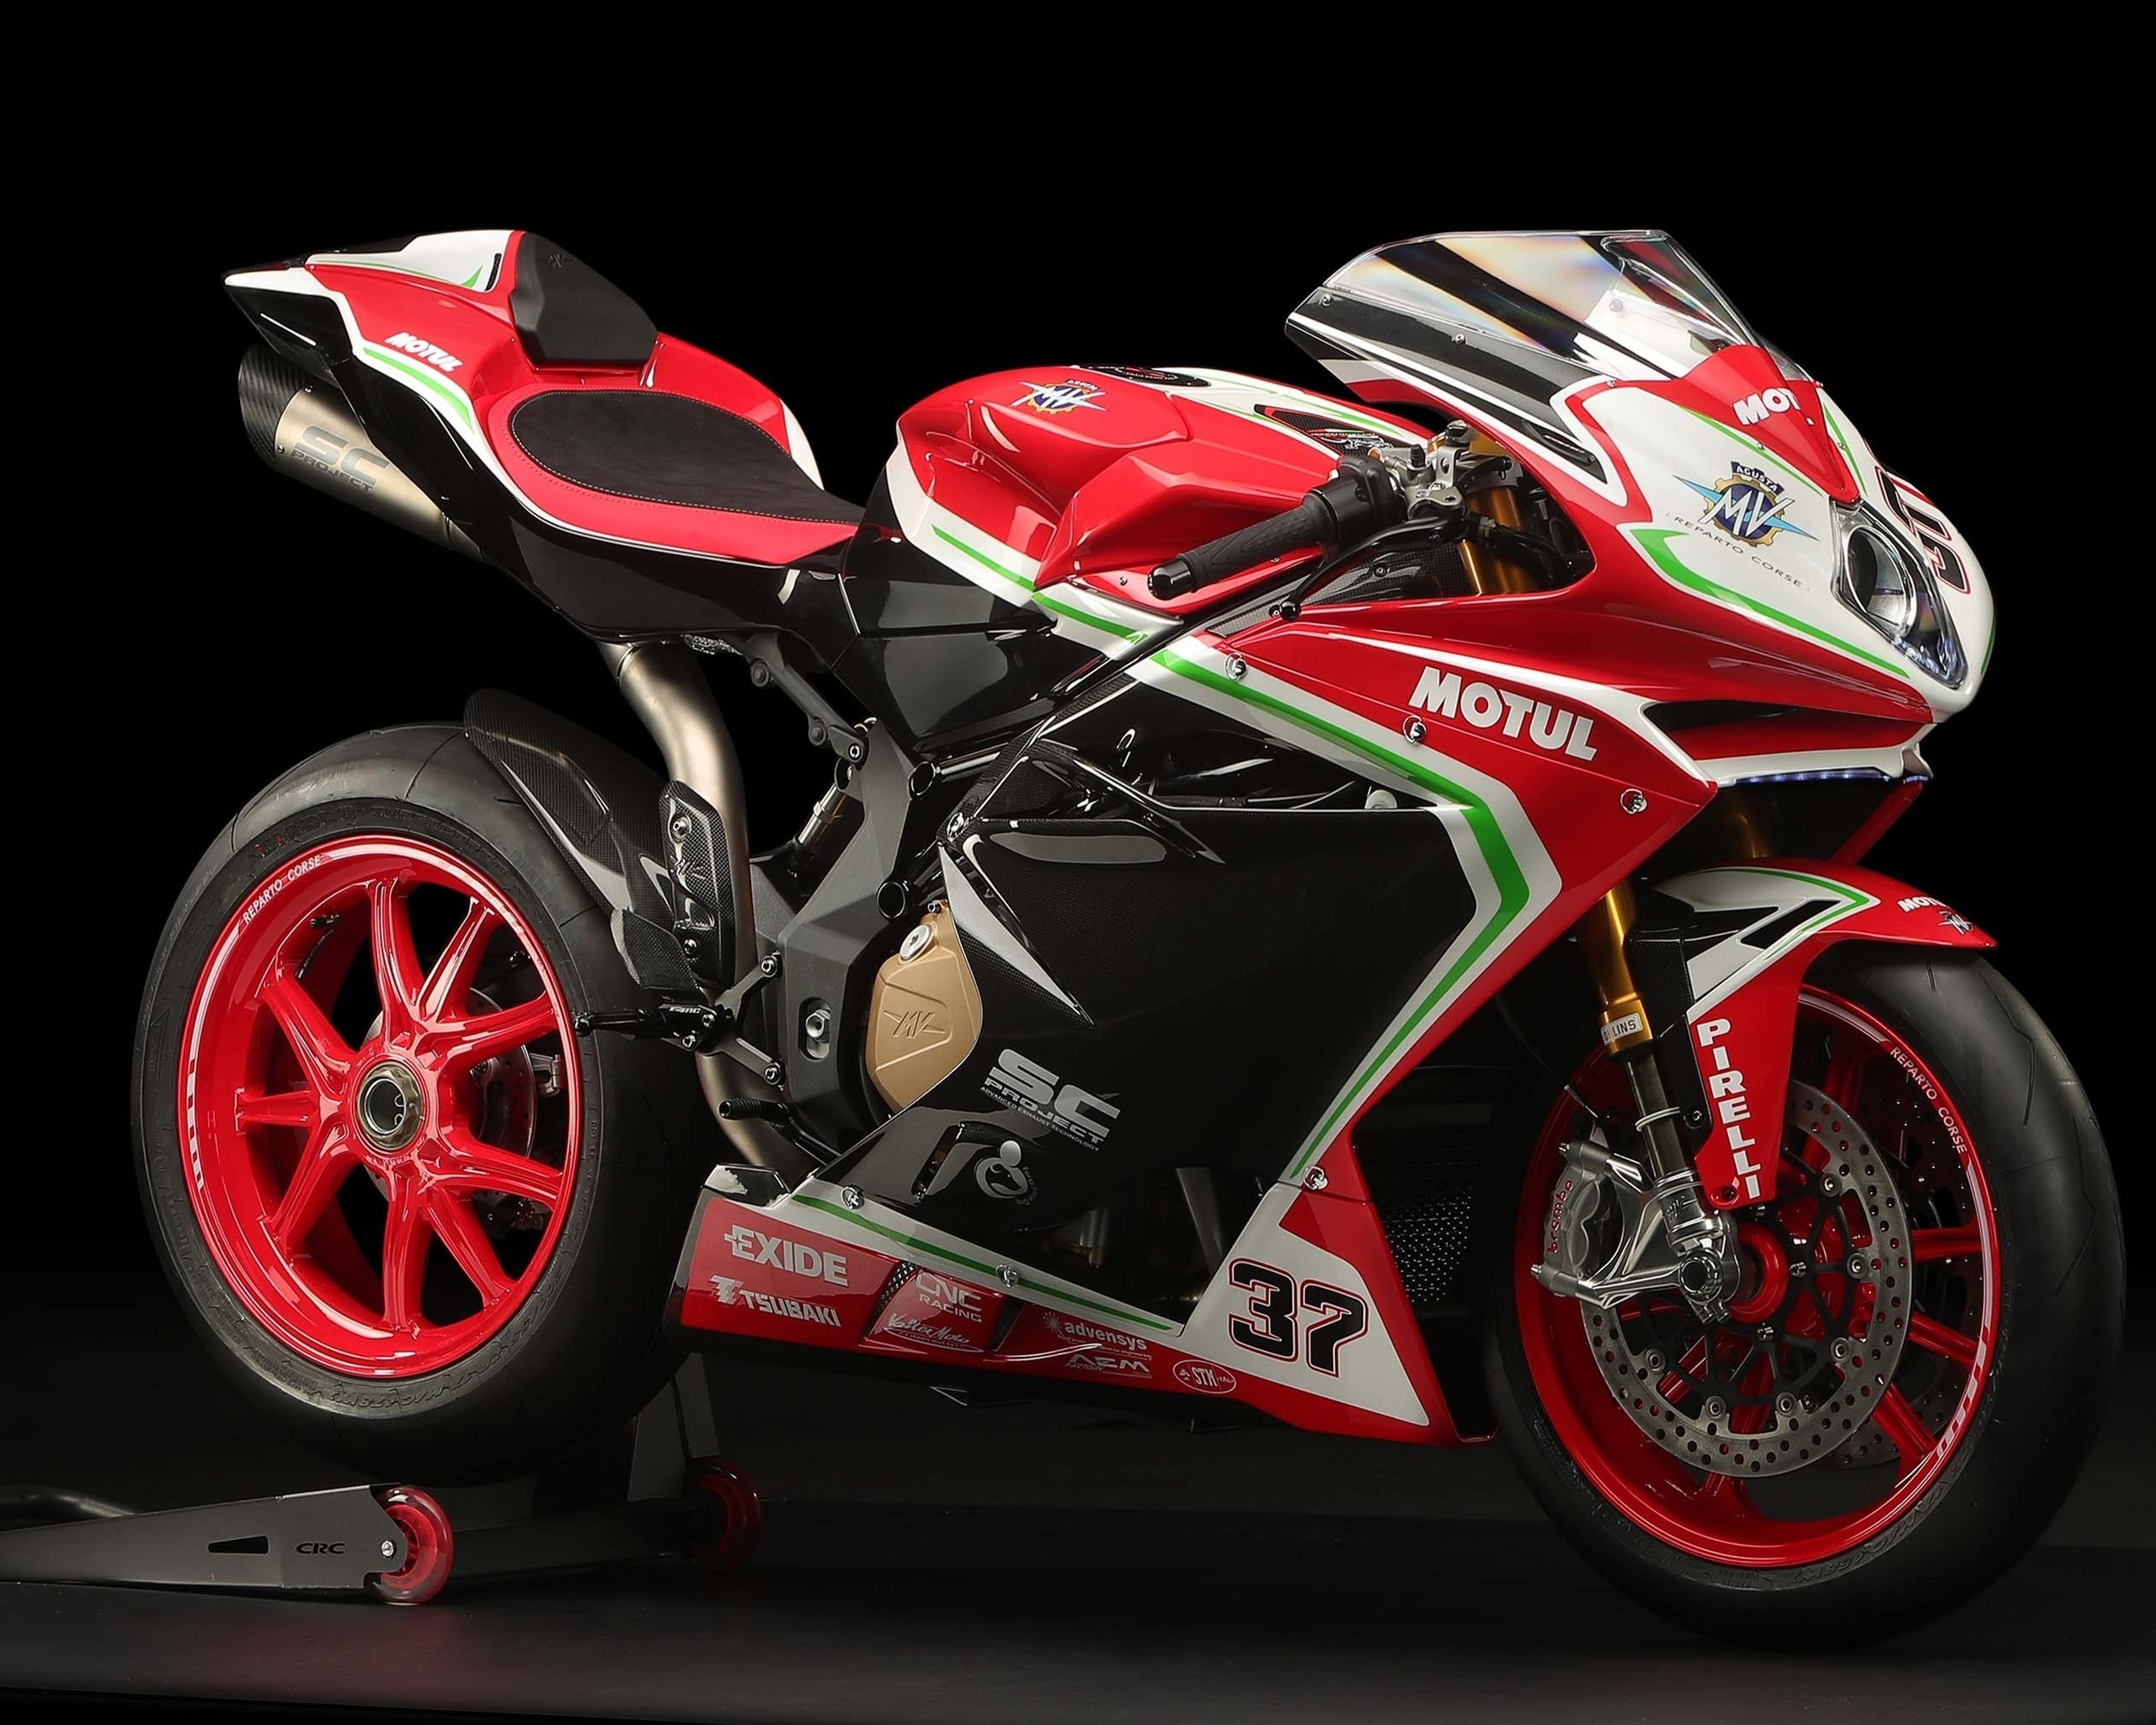 Картинка: Мотоцикл, MV Agusta, F4, series, тёмный фон, красный